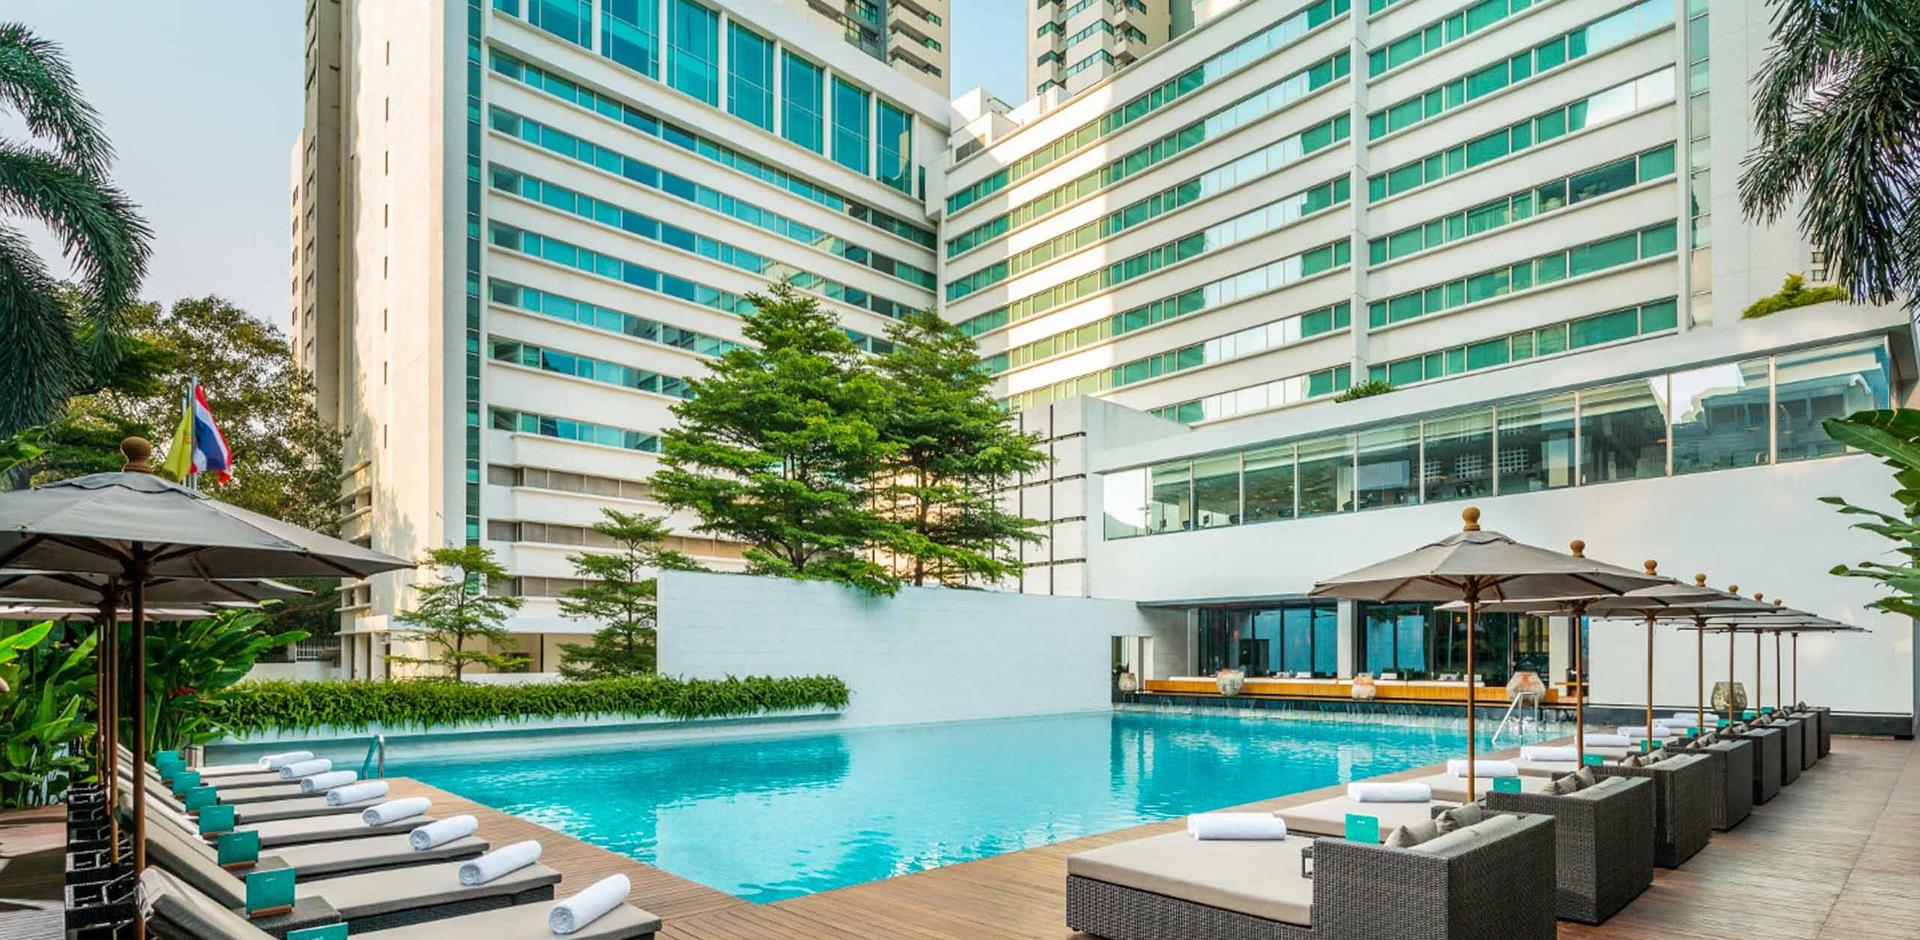 Pool and exterior, COMO Metropolitan Bangkok, Thailand